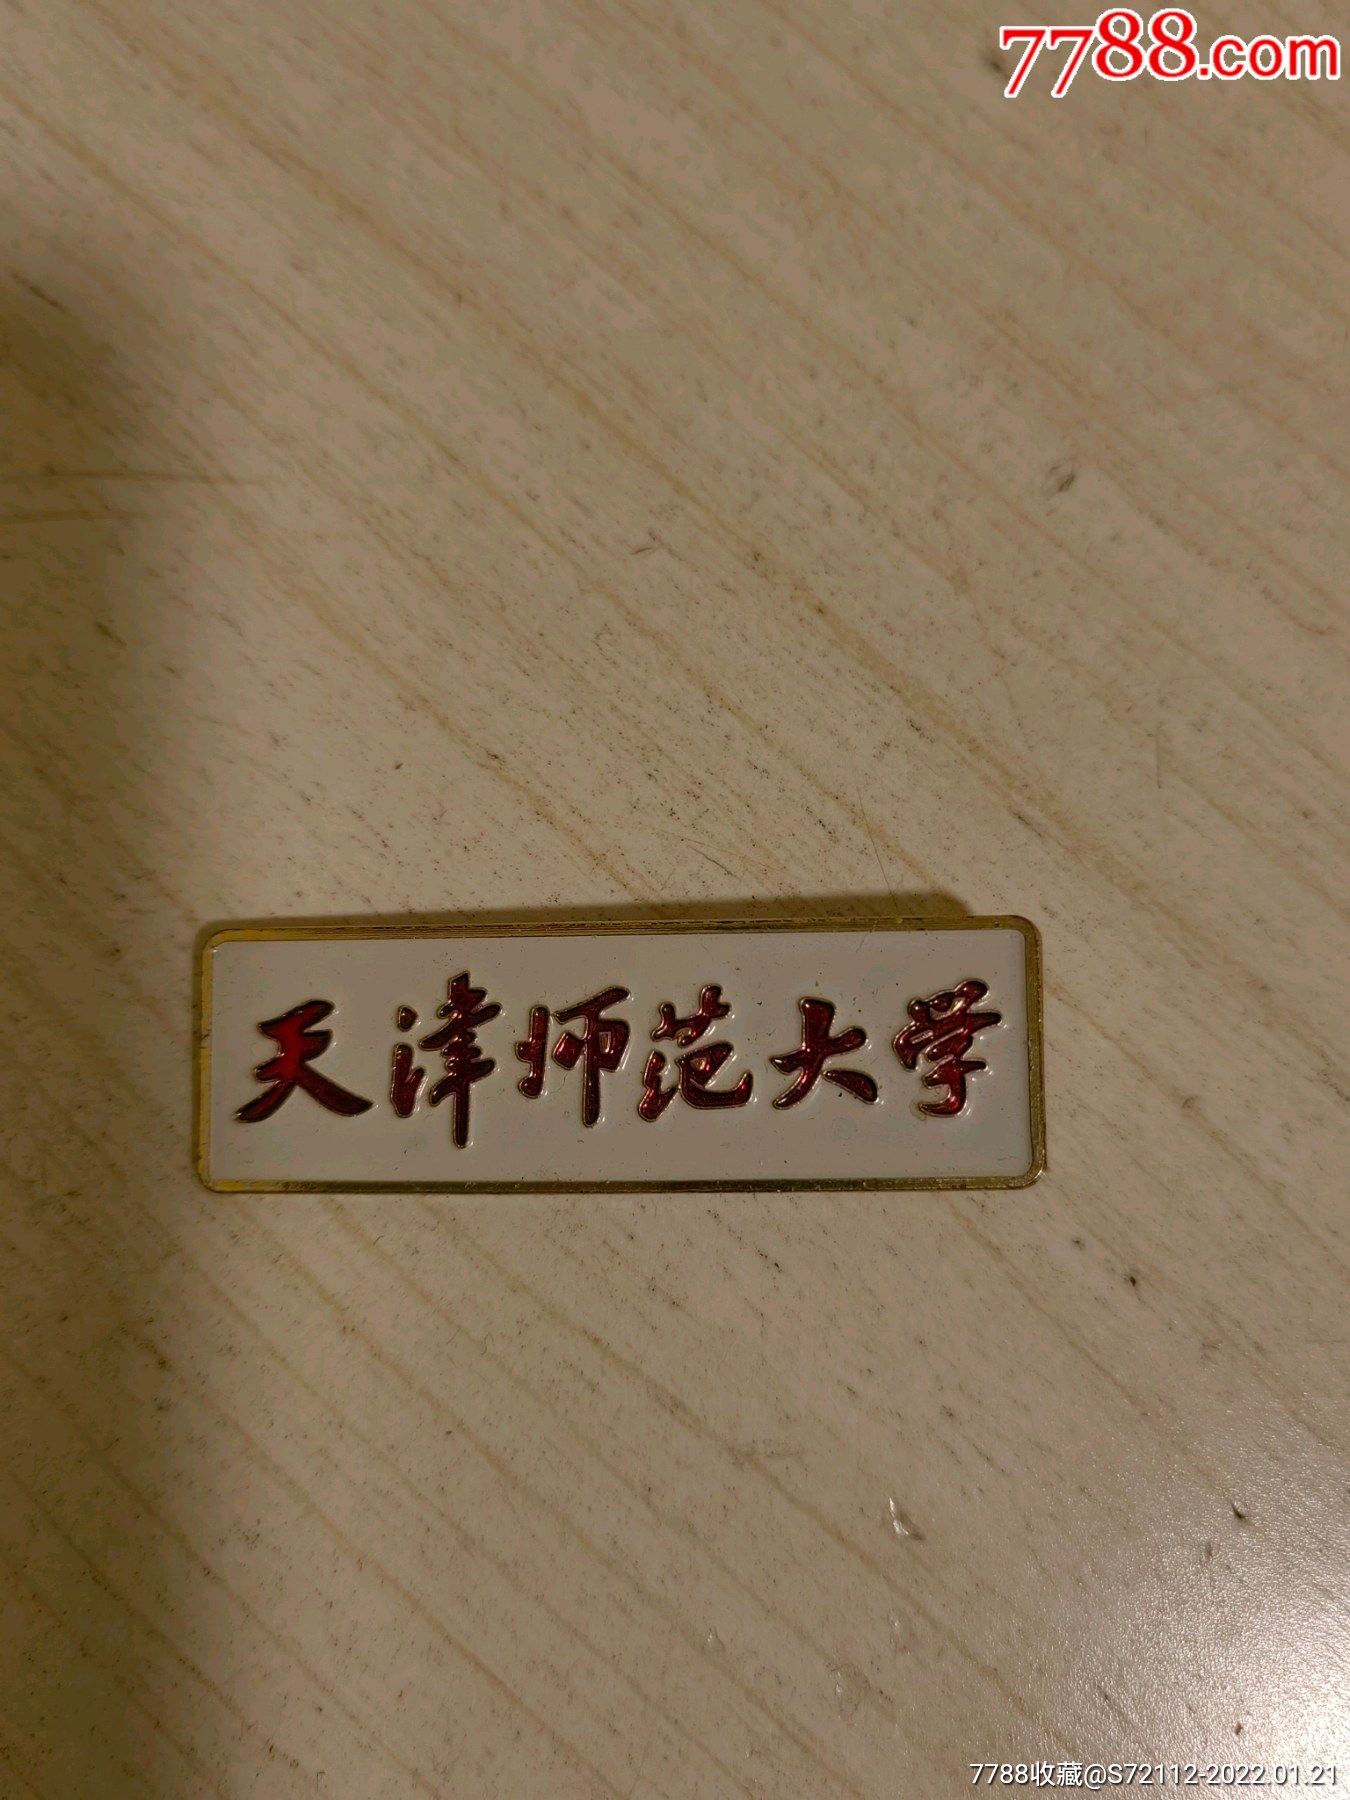 天津师范大学校徽壁纸图片